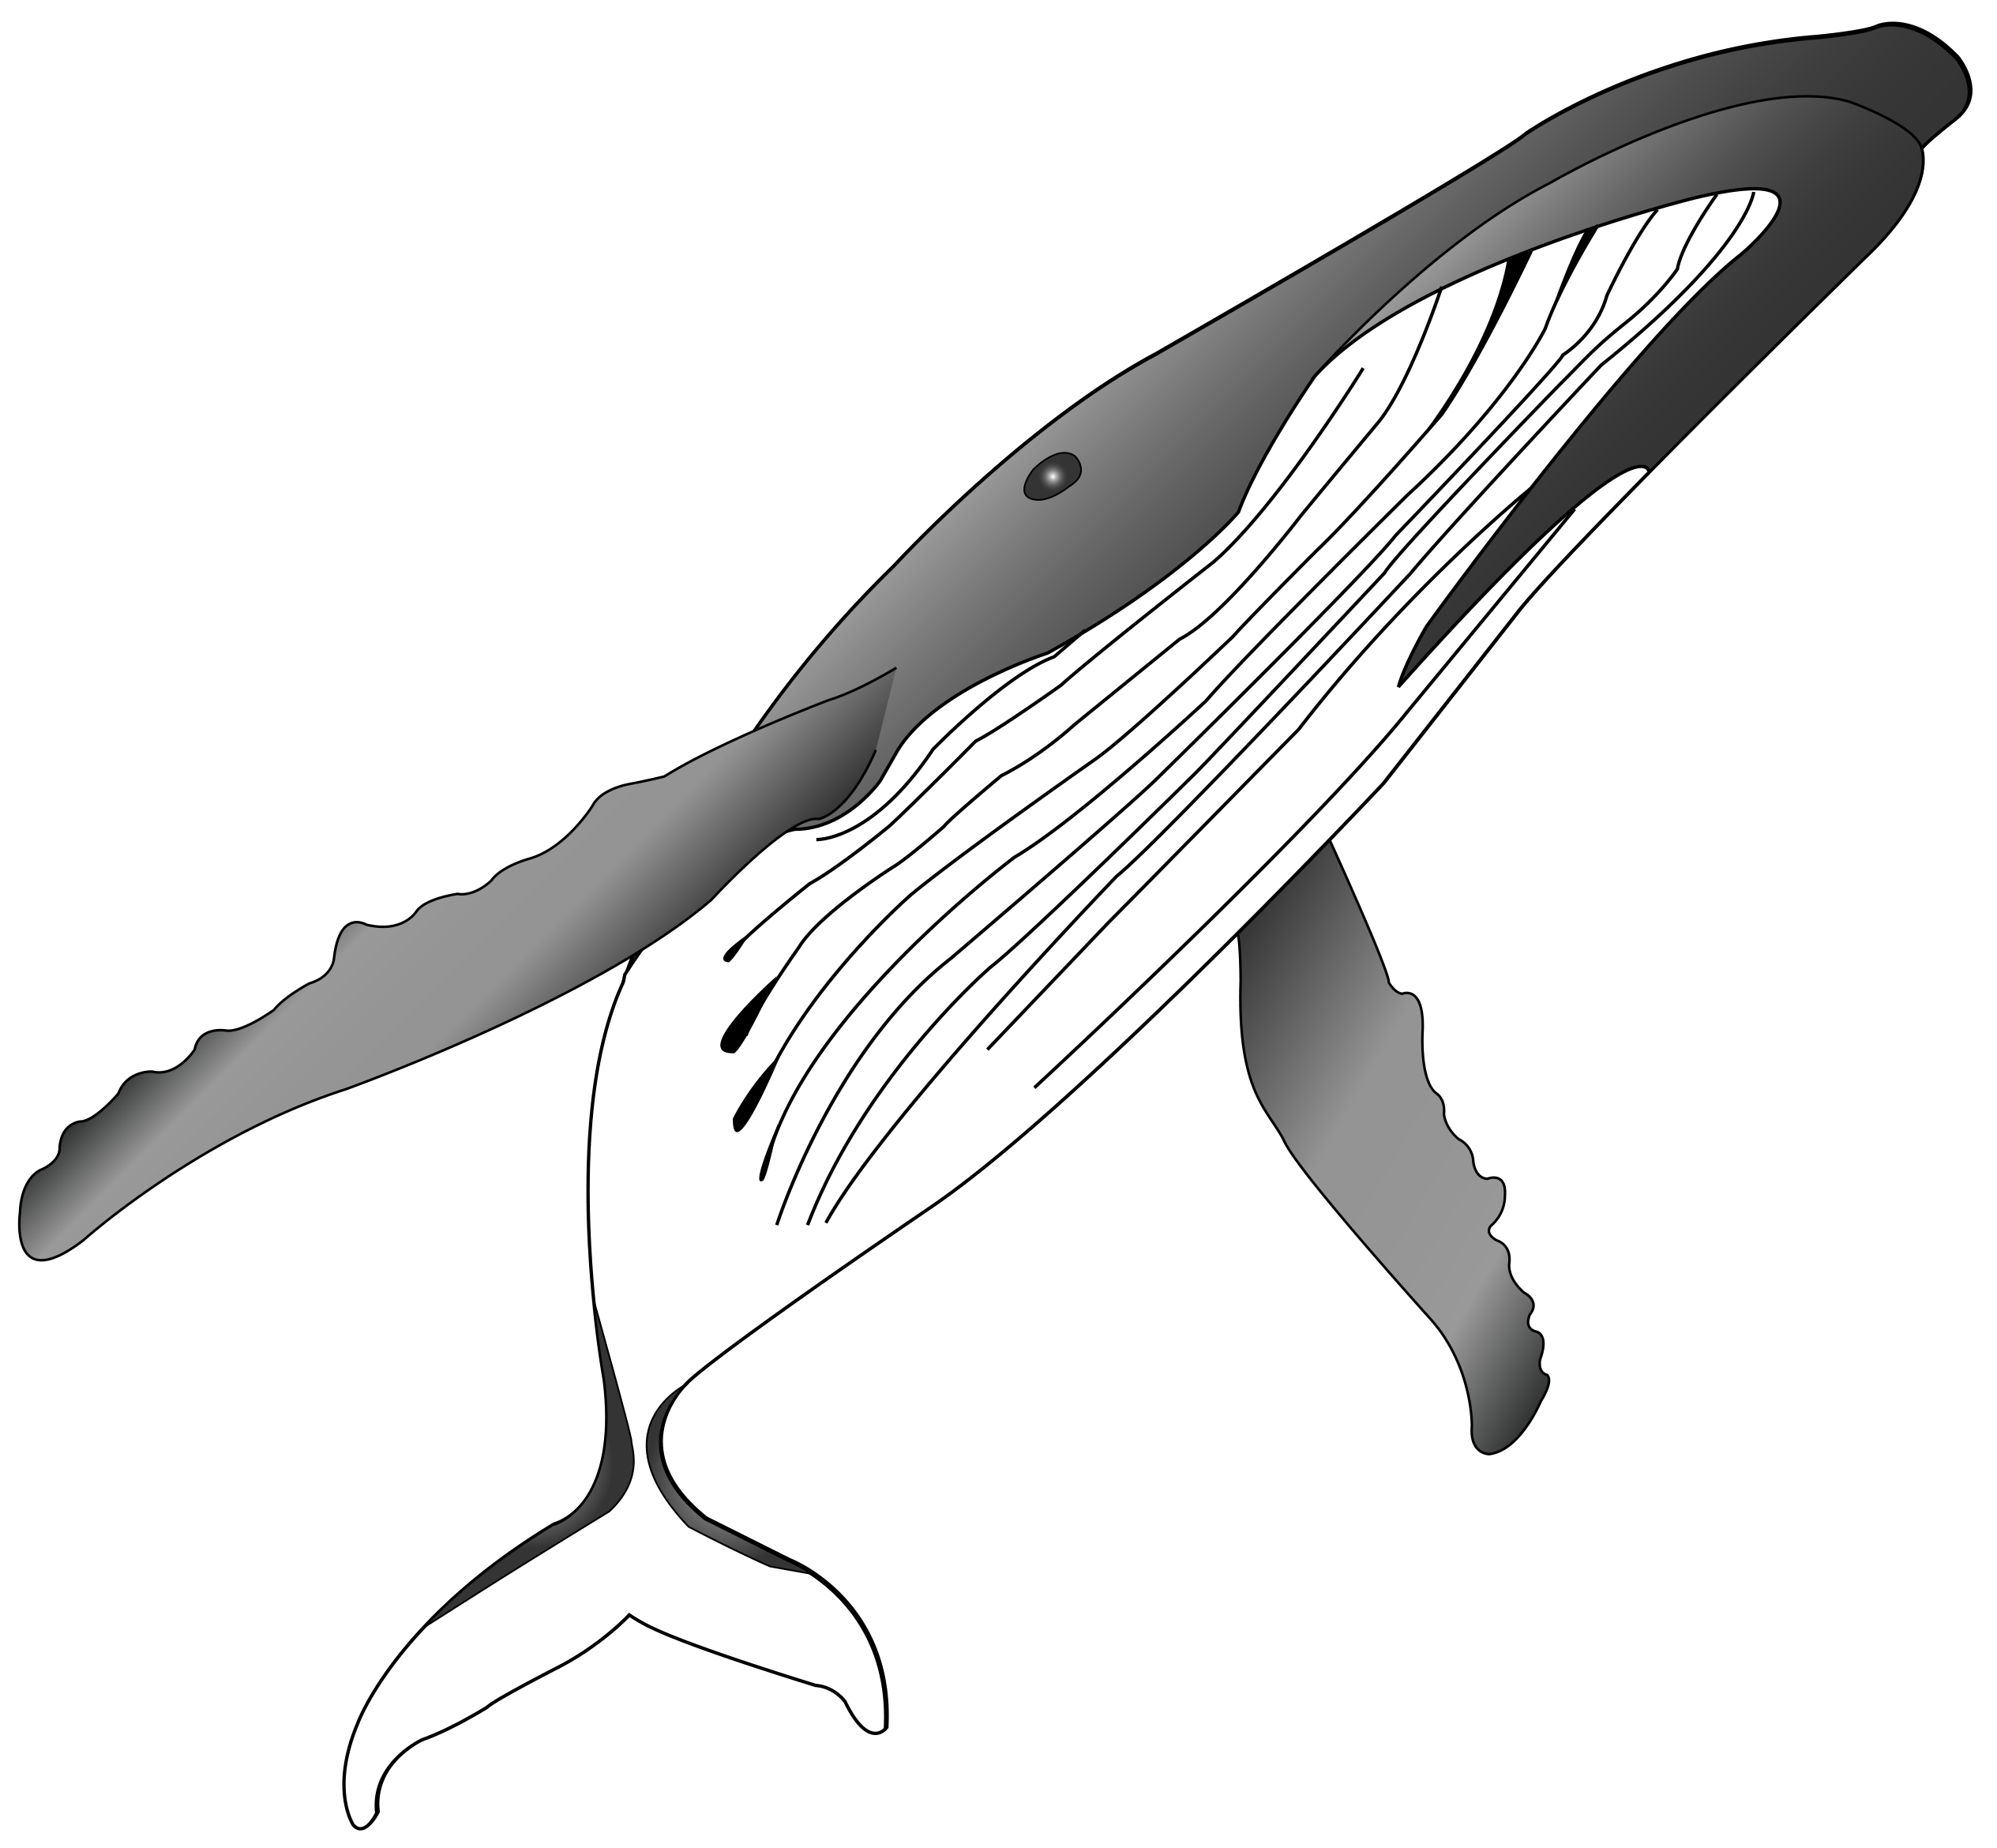 humpback whale
